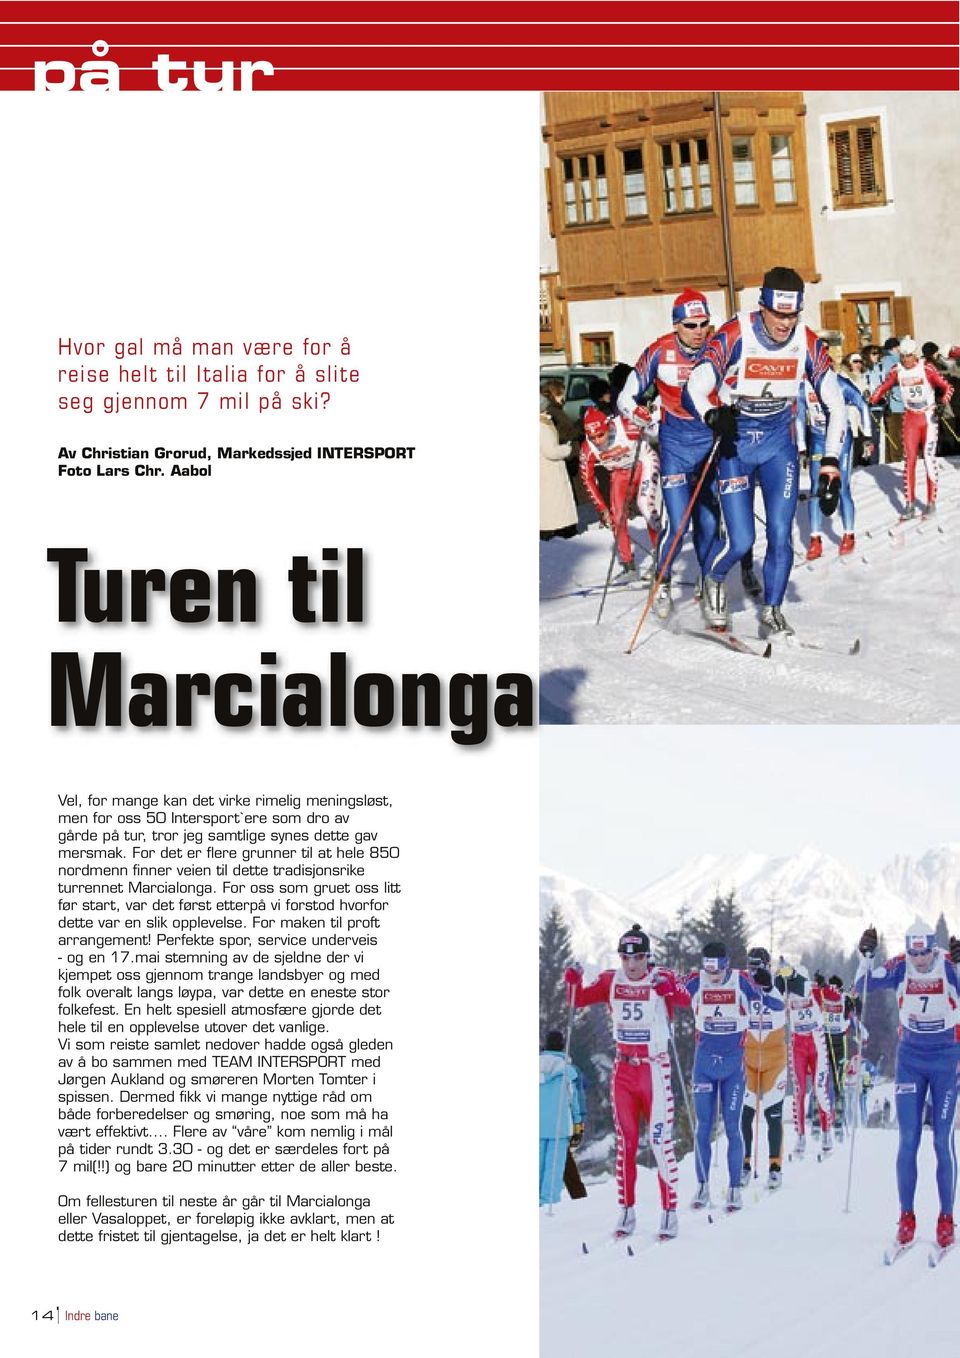 For det er flere grunner til at hele 850 nordmenn finner veien til dette tradisjonsrike turrennet Marcialonga.